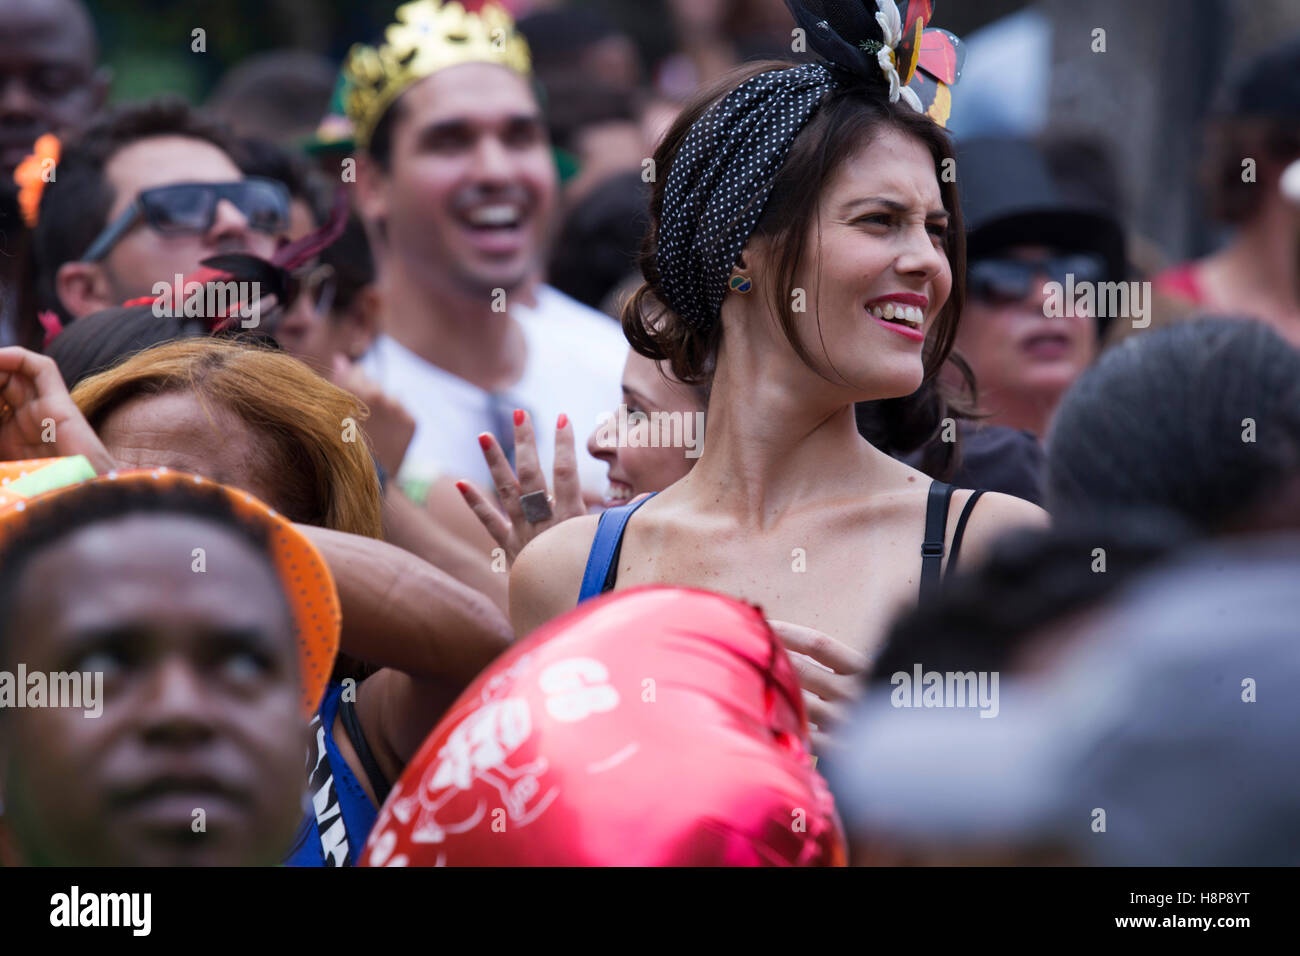 Carnival revelers having fun Stock Photo